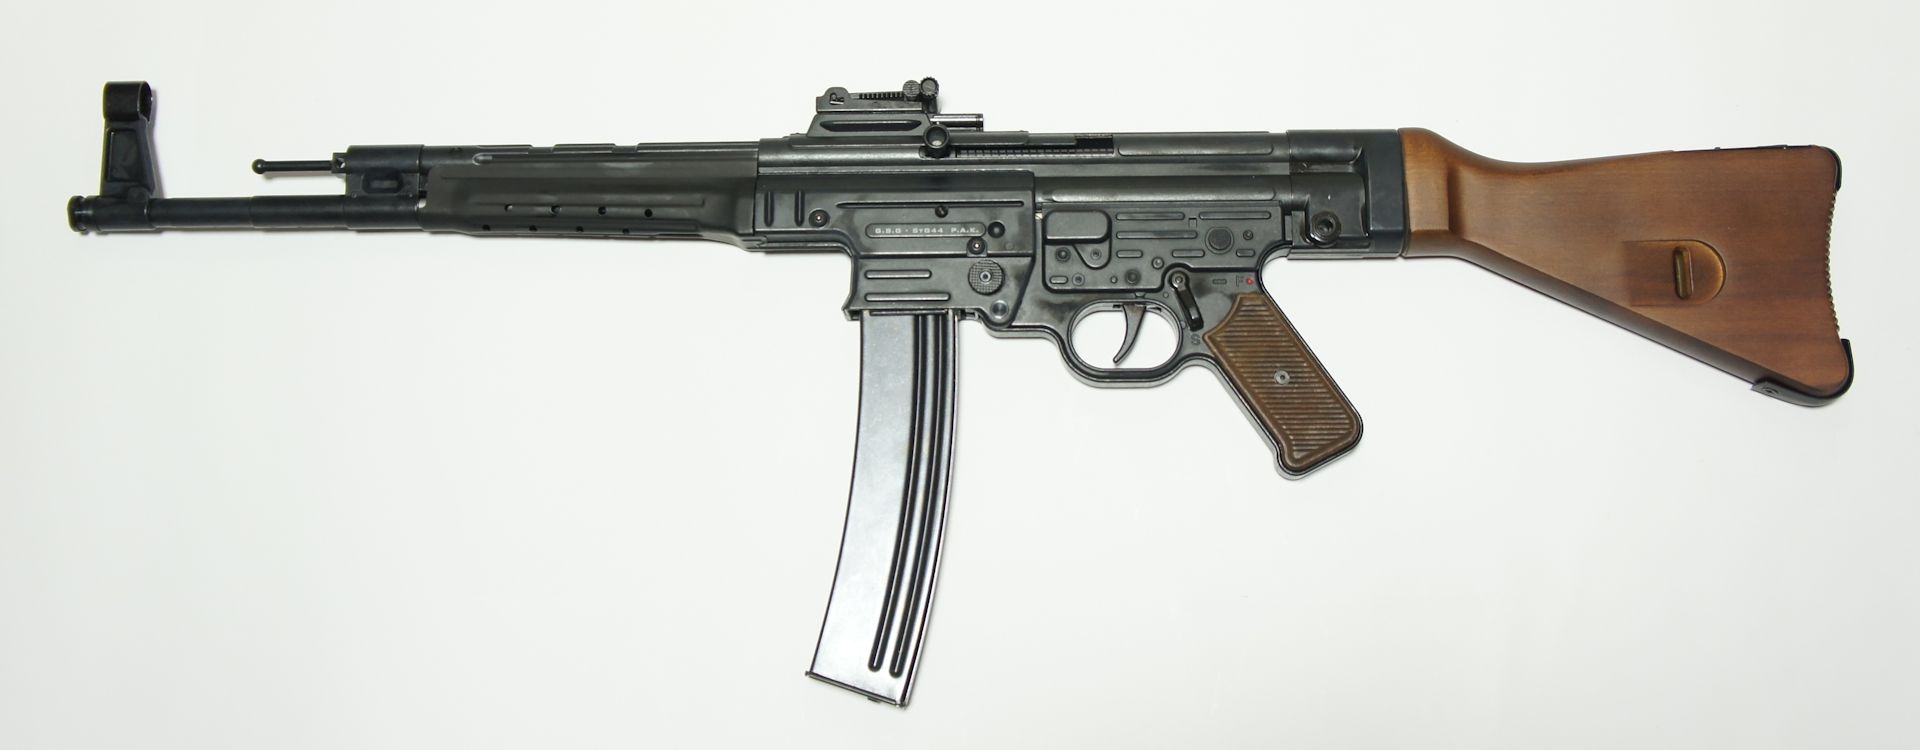 Salut- oder Schreckschusswaffe als Nachbau der legendären Stgw. 44  im Kaliber 9mm P.A.K.